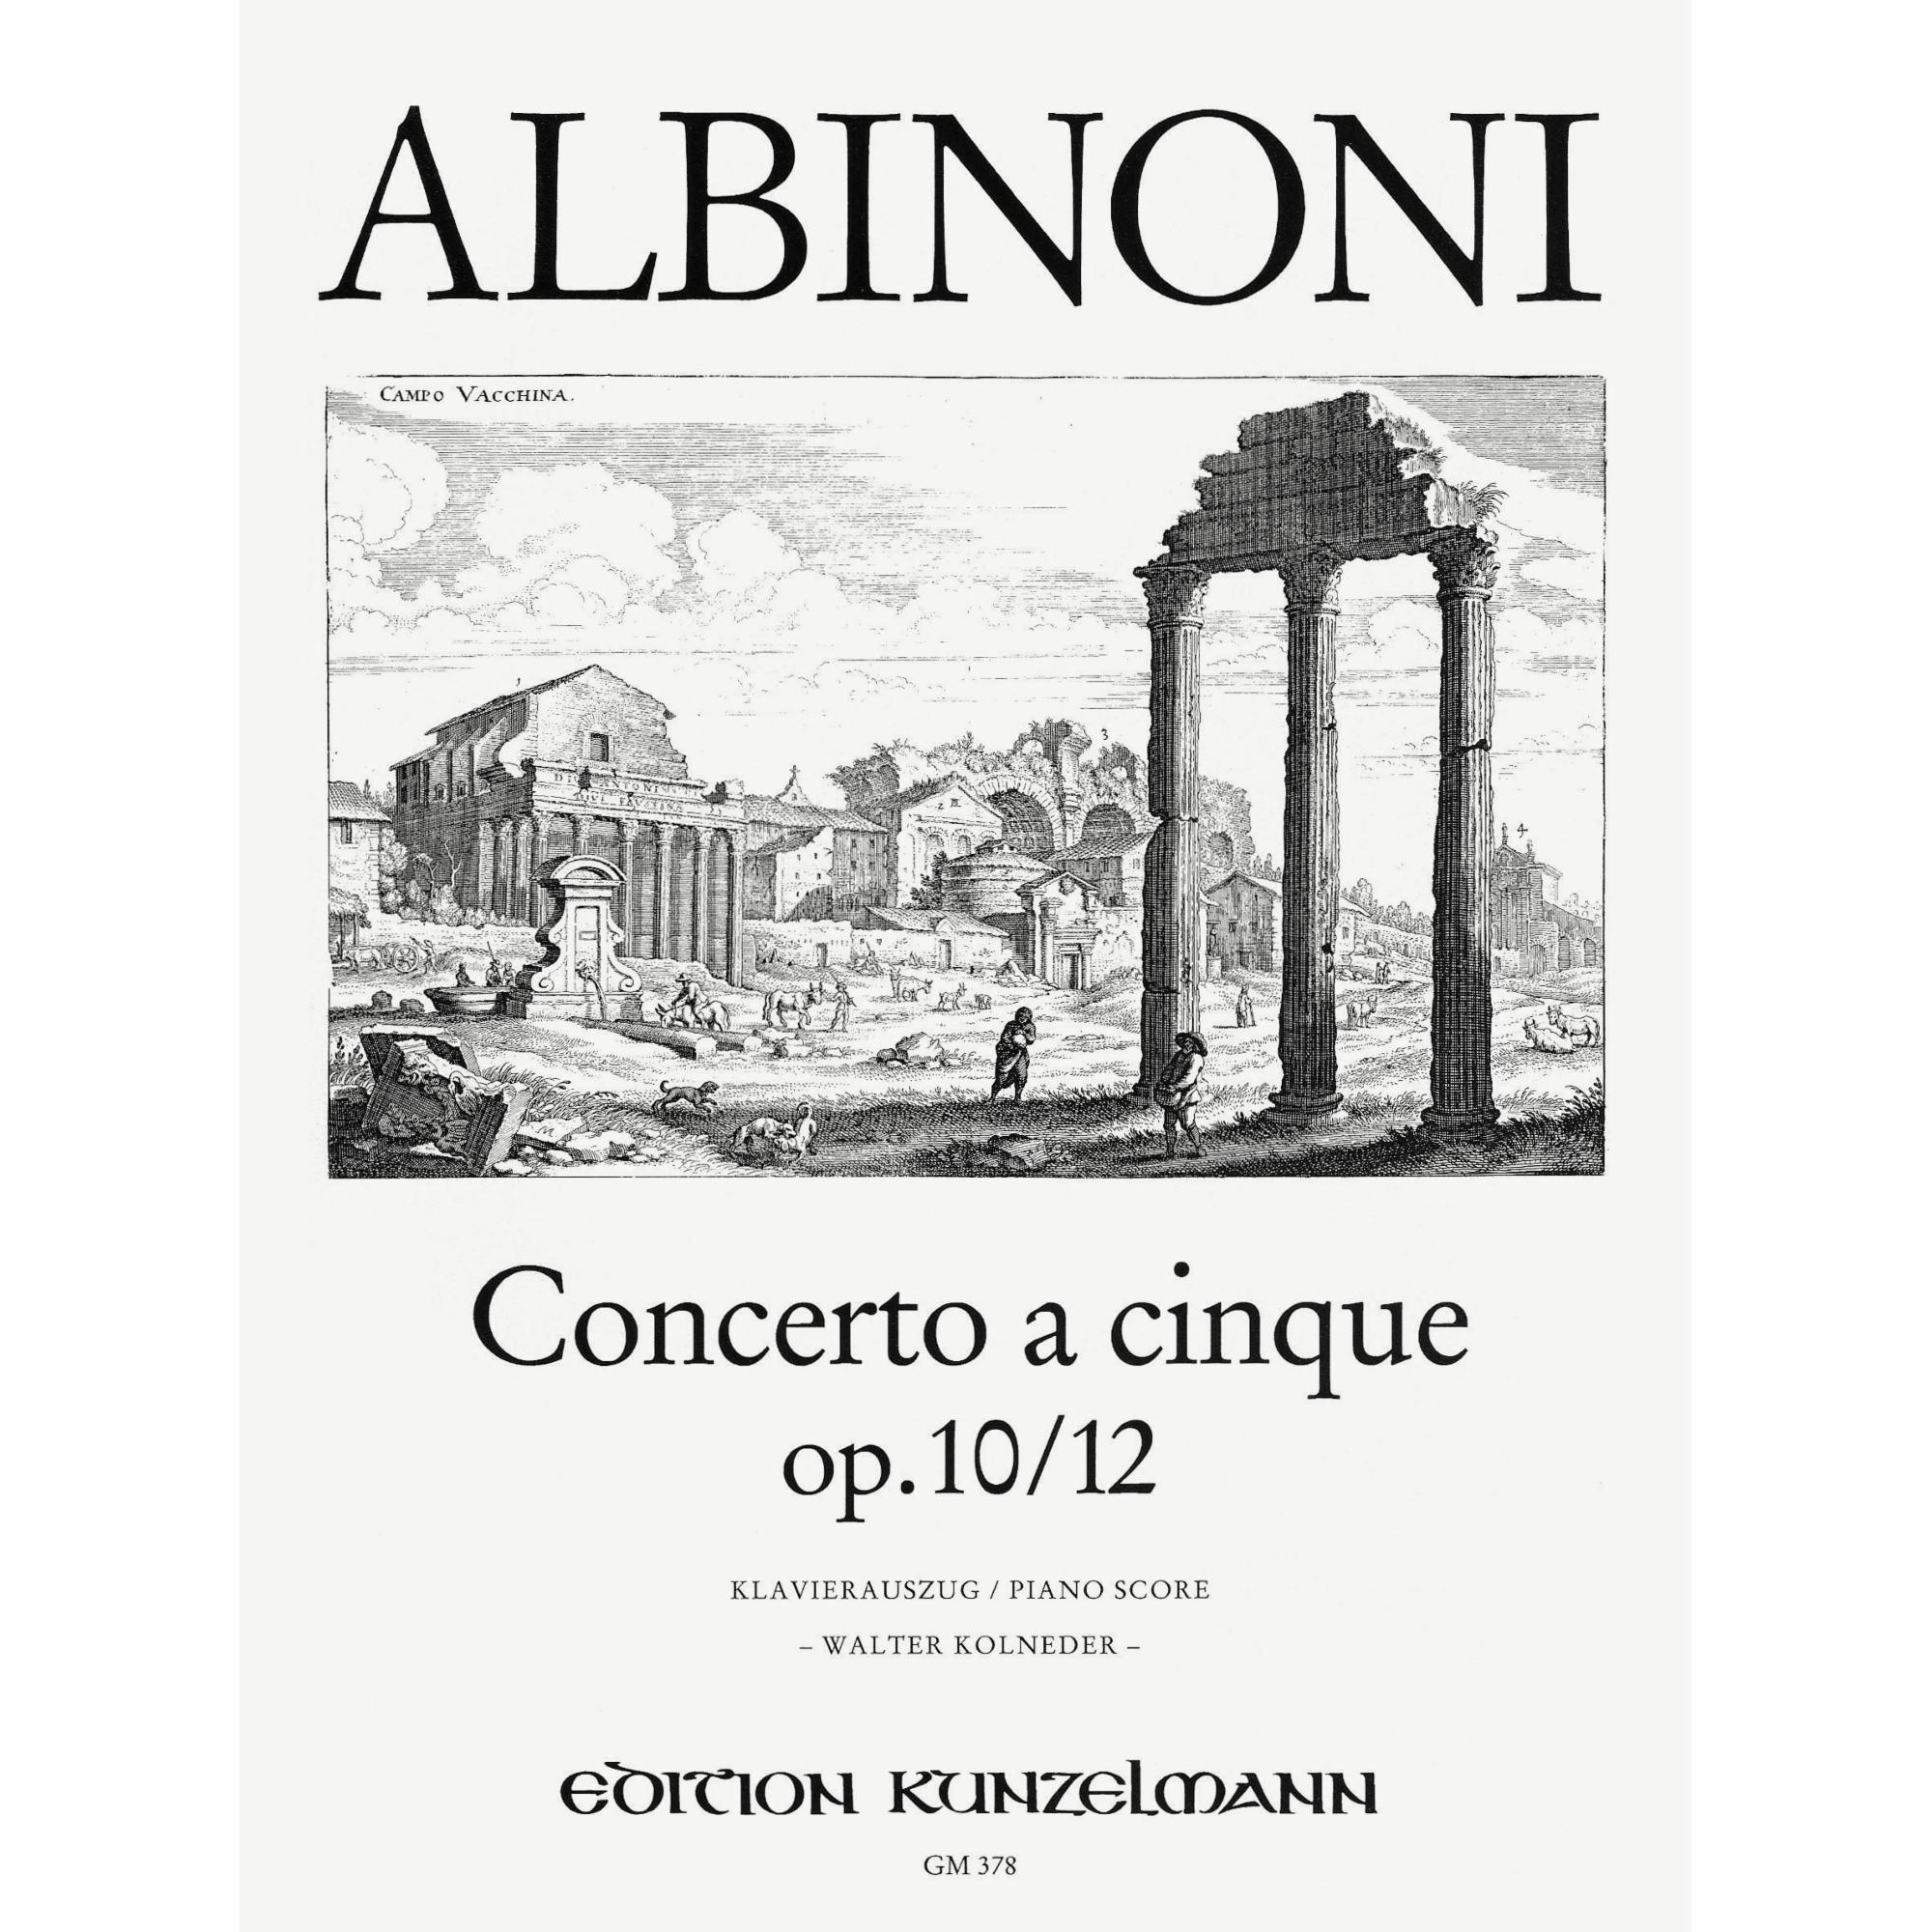 Albinoni -- Concerto a cinque, Op. 10/12 for Violin and Piano